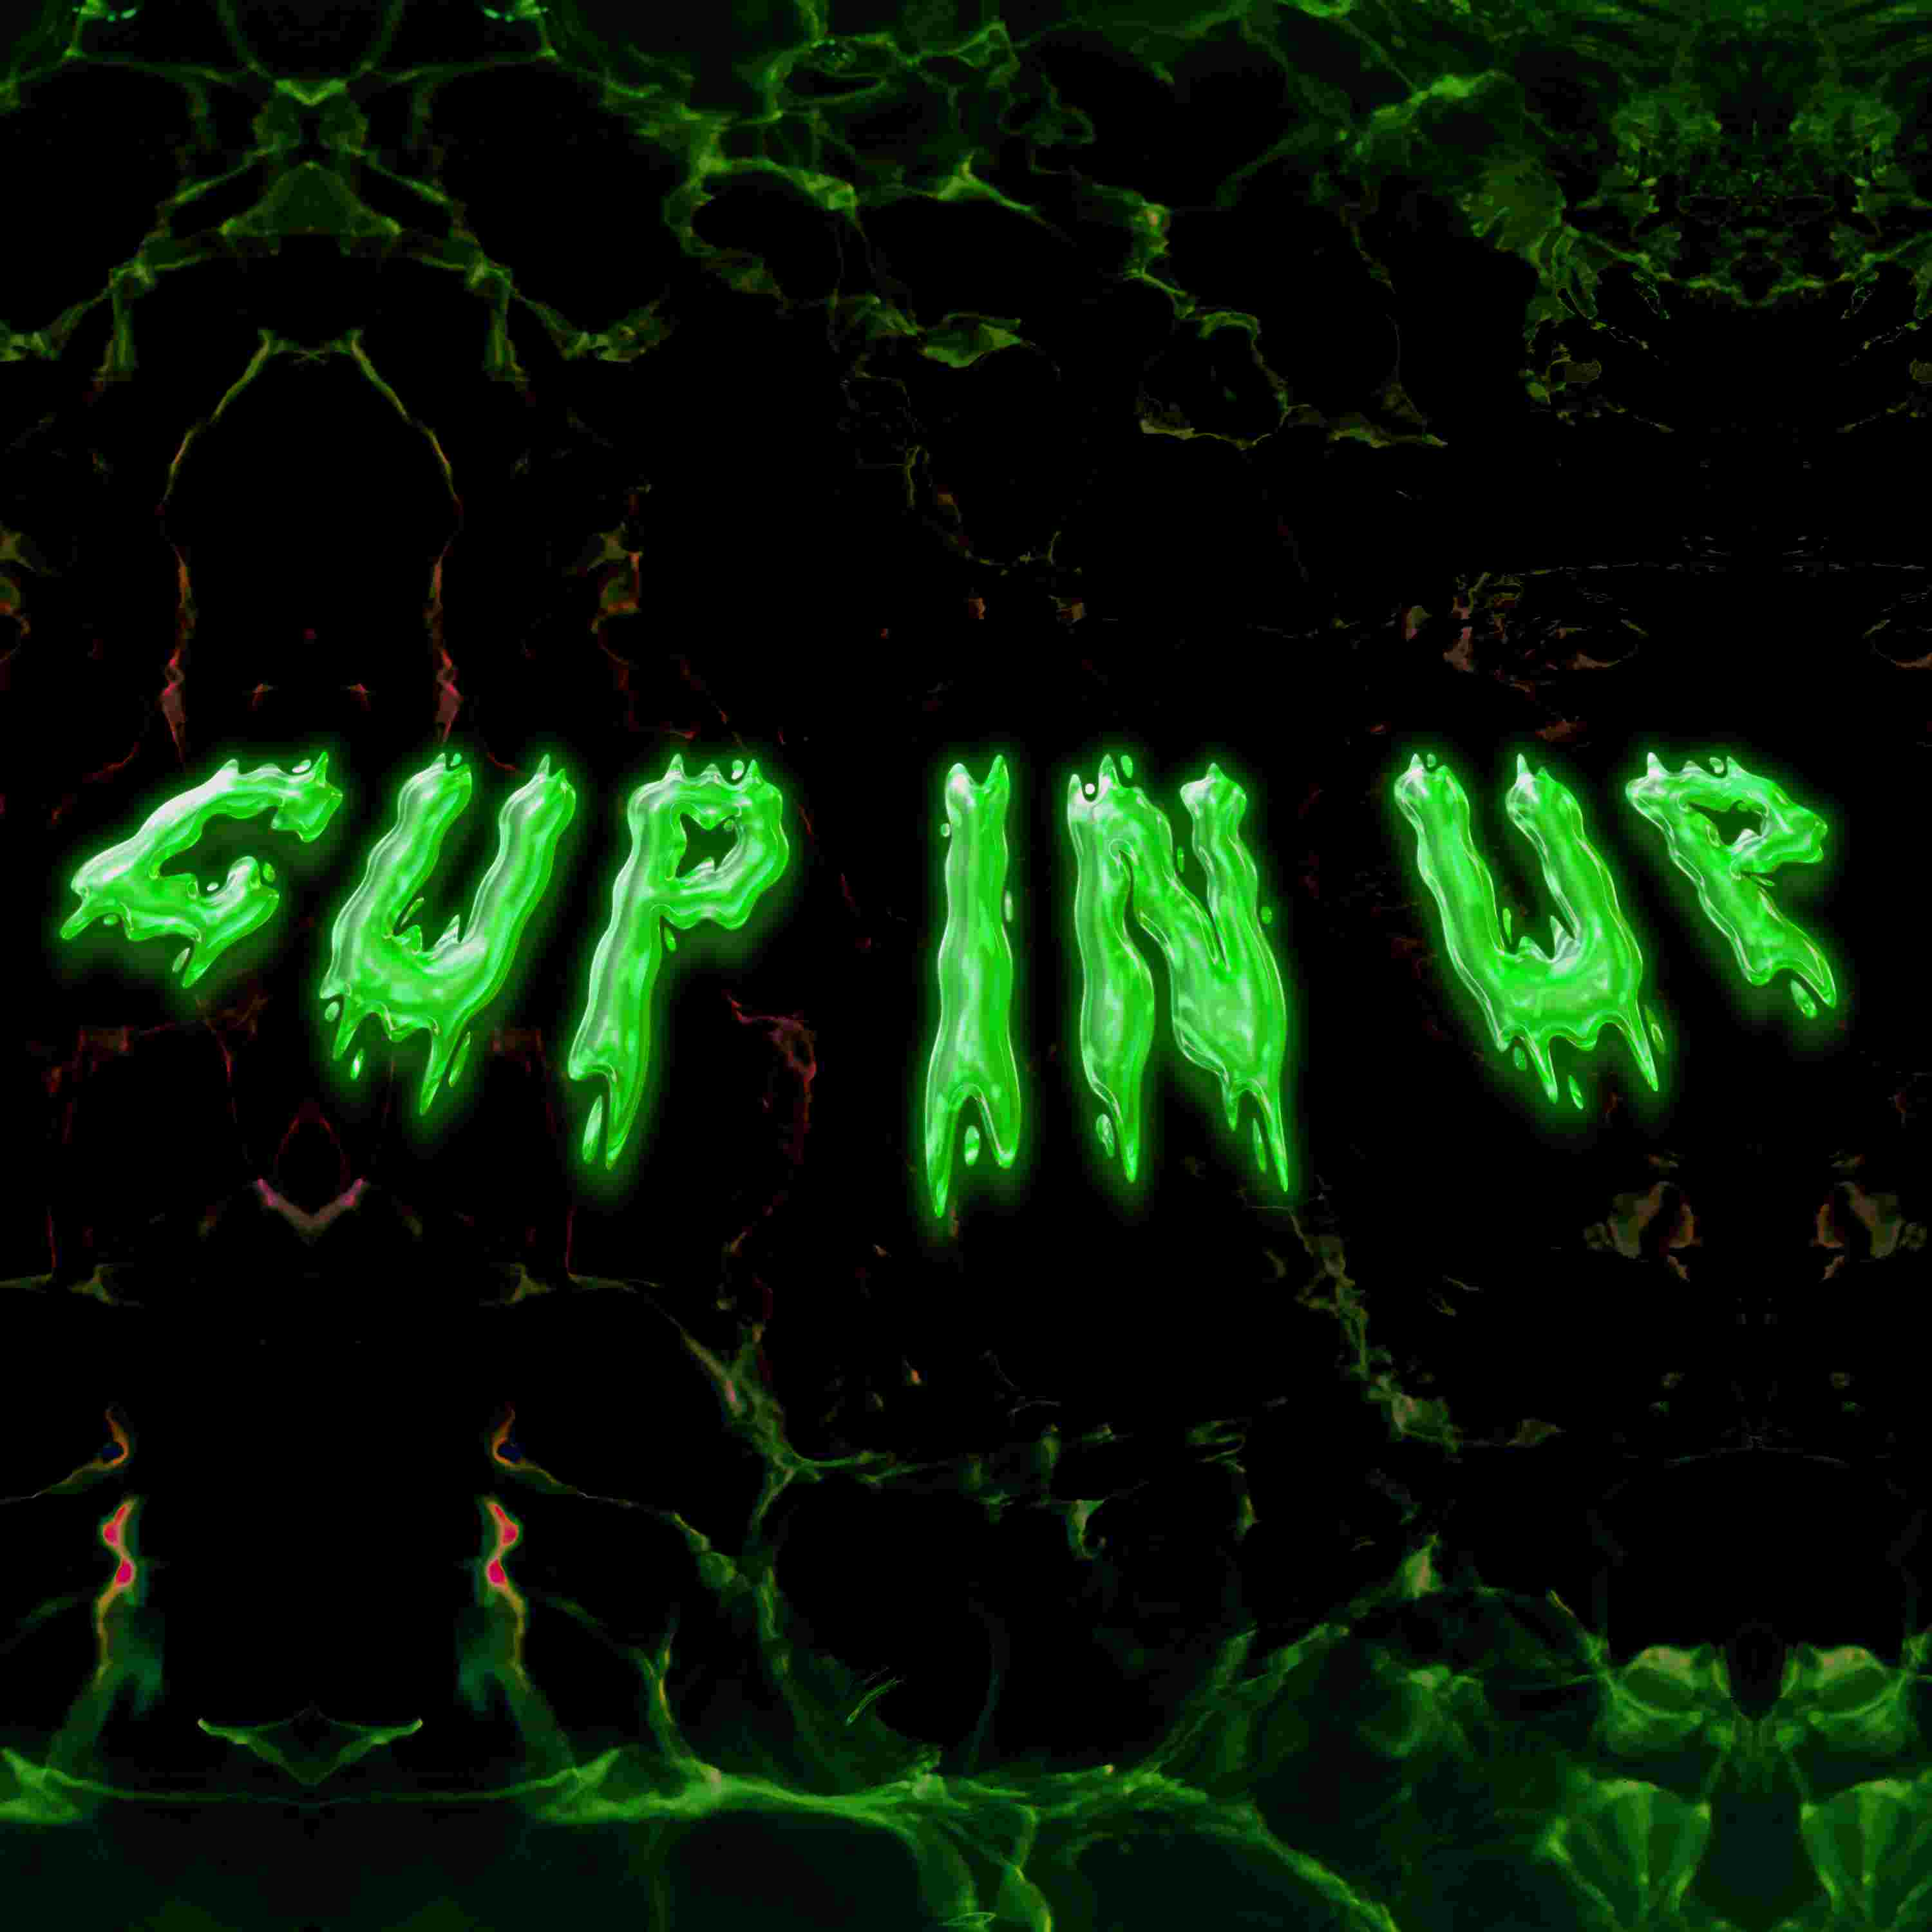 SIXONESIX feat. YOUNG AM, “Cup in up” è il nuovo singolo della giovane band trap